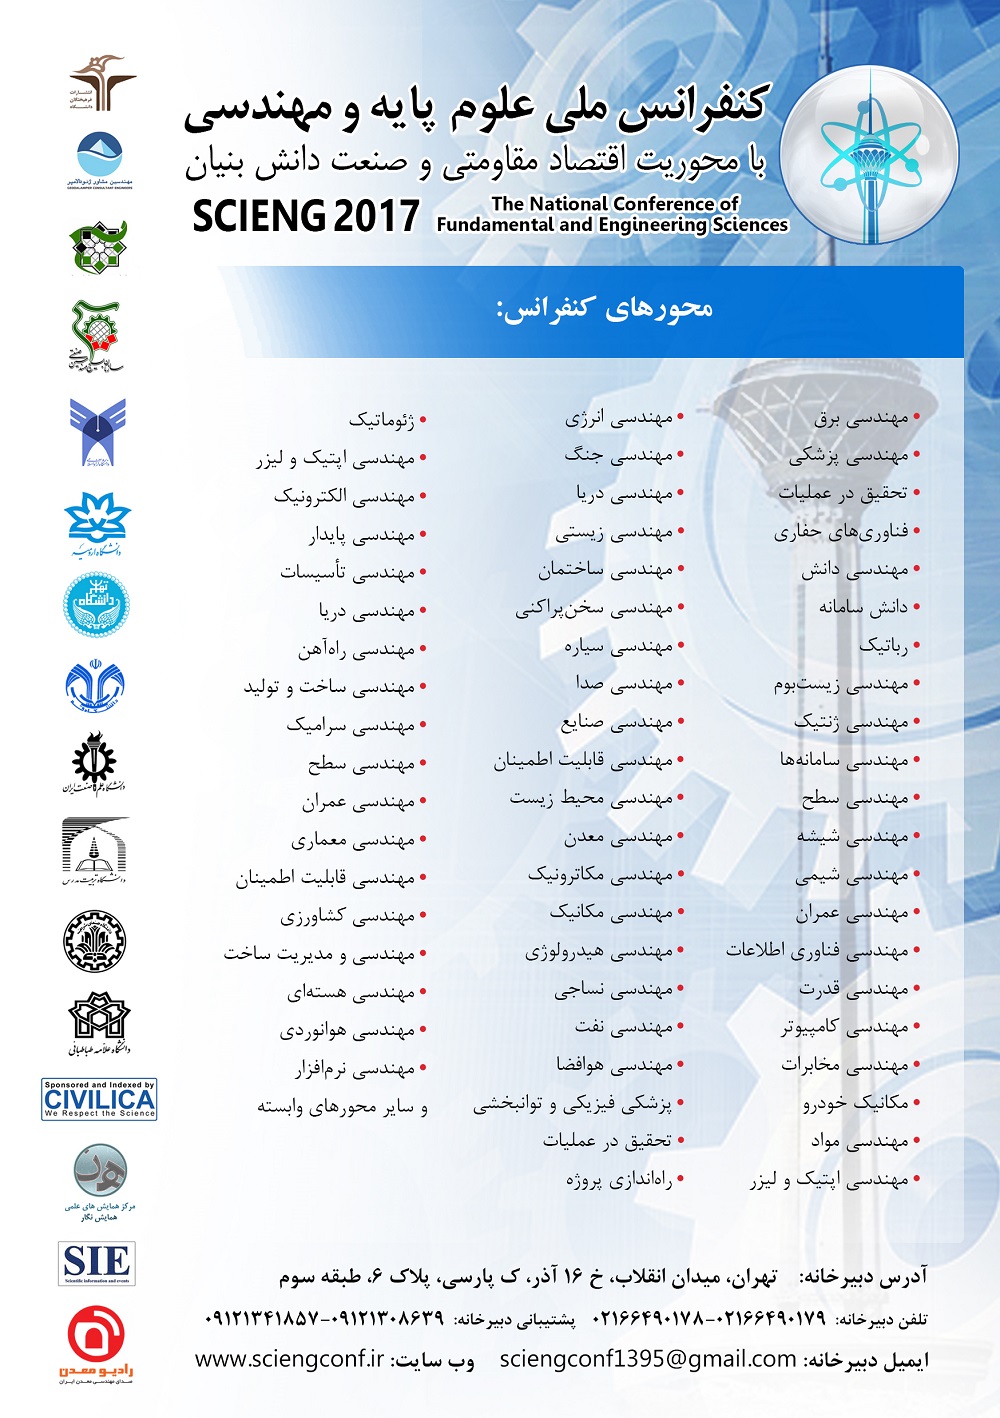 پوستر کنفرانس ملی علوم پایه و مهندسی با محوریت اقتصاد مقاومتی و صنعت دانش بنیان